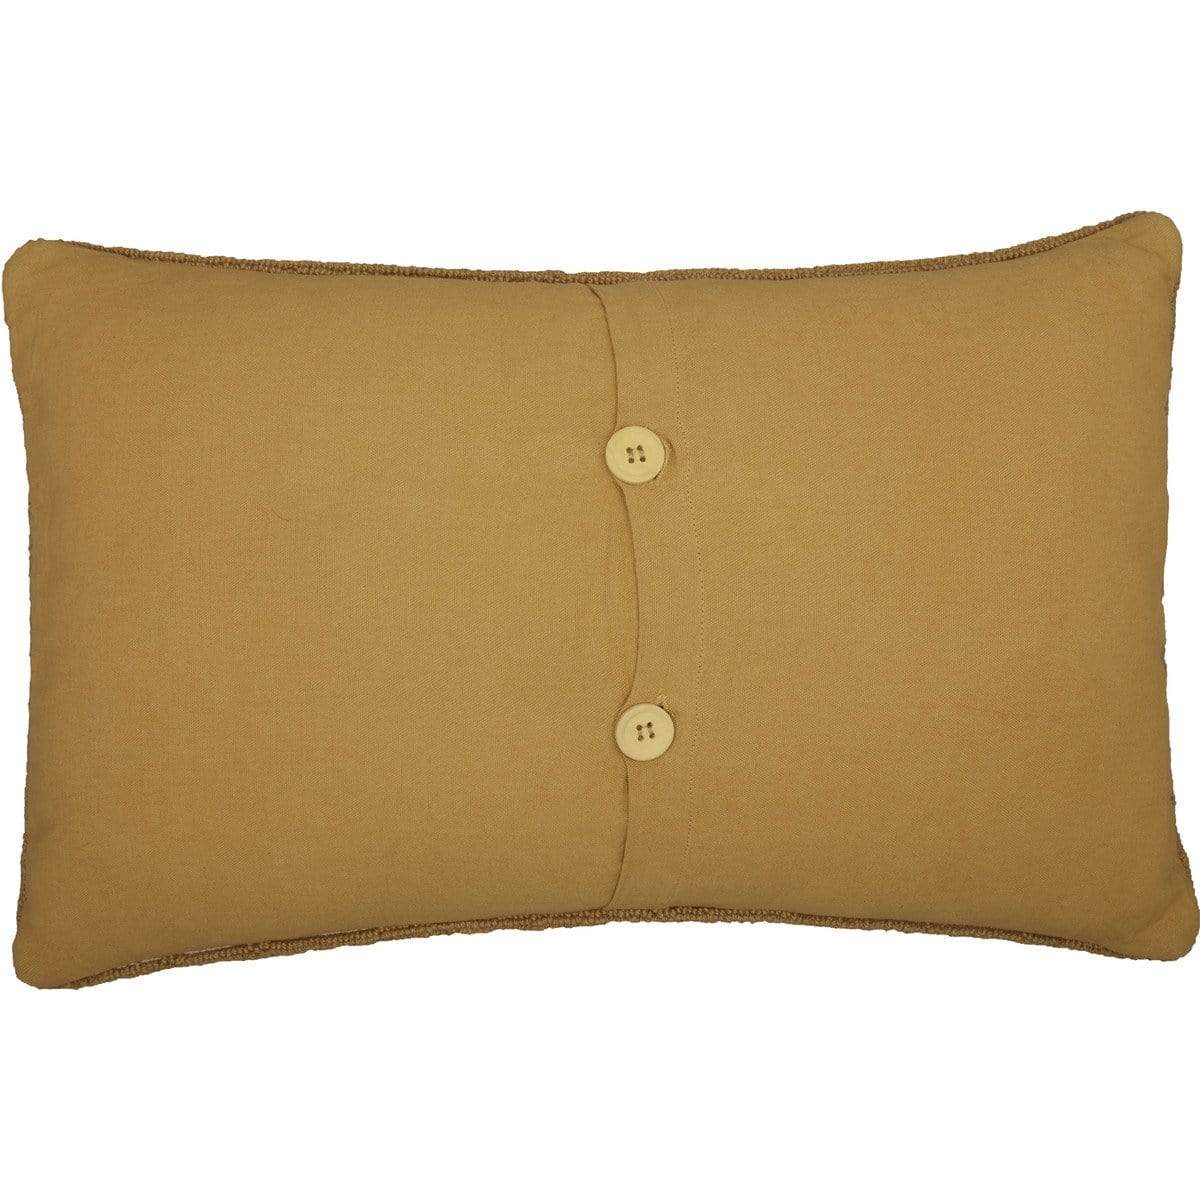 Beckham Elk Hooked Pillow 18x18 - Accent Pillows - PINE VALLEY QUILTS